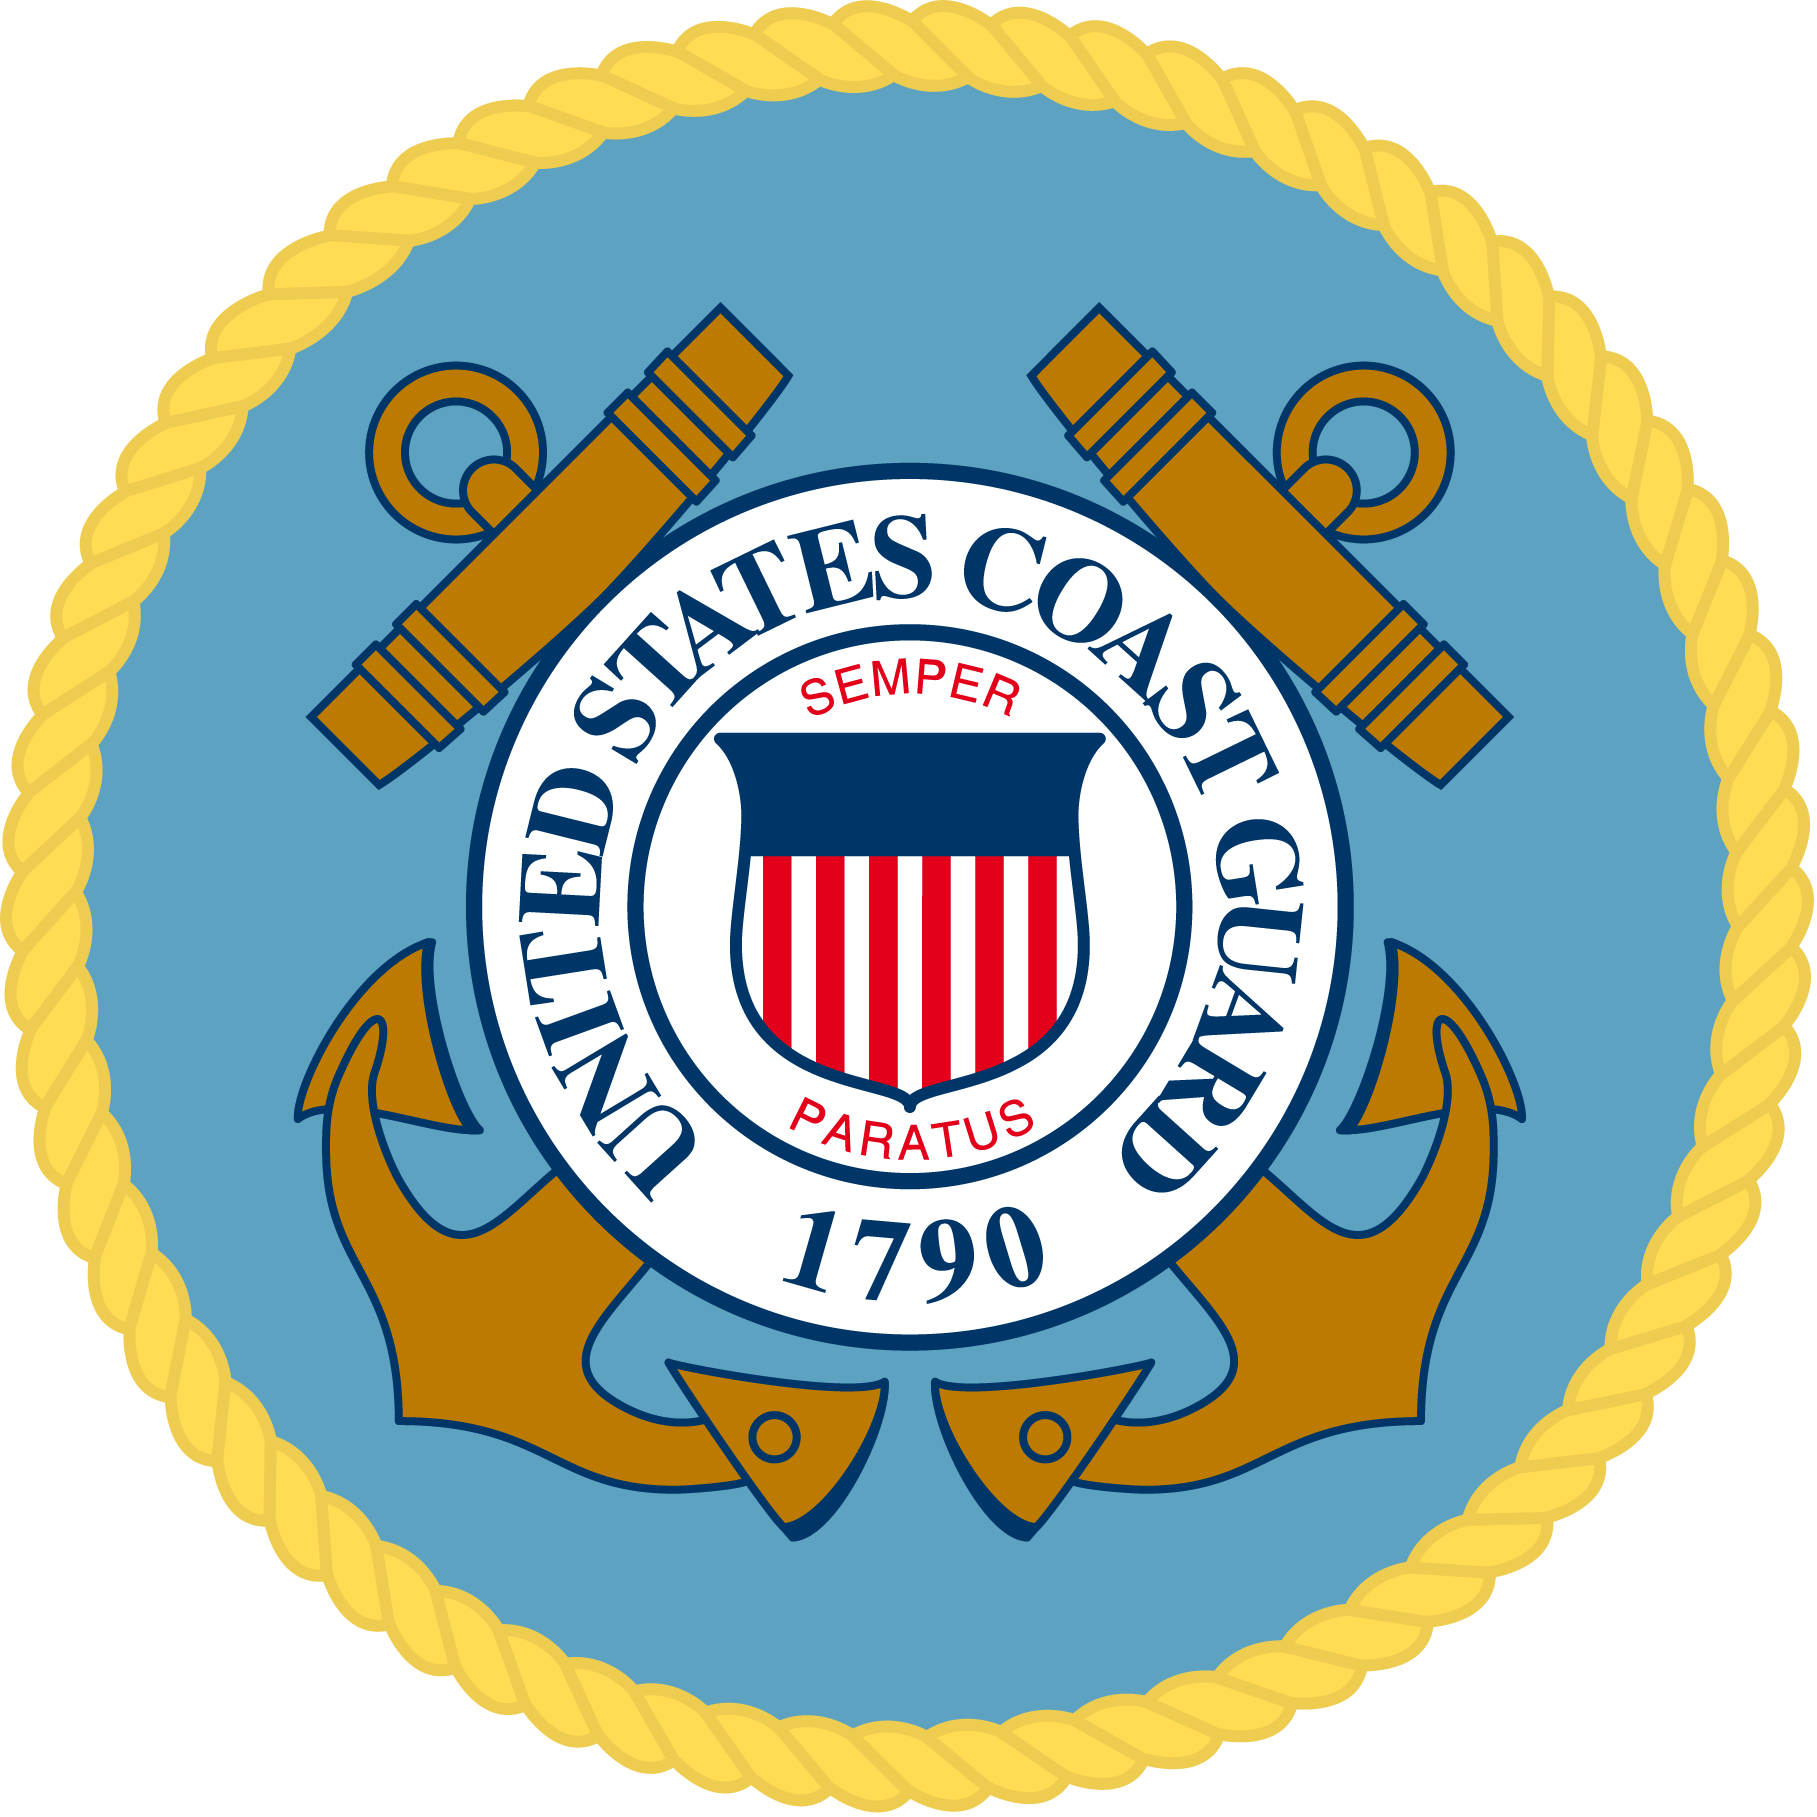 United States Coast Guard USCG logo, logotype